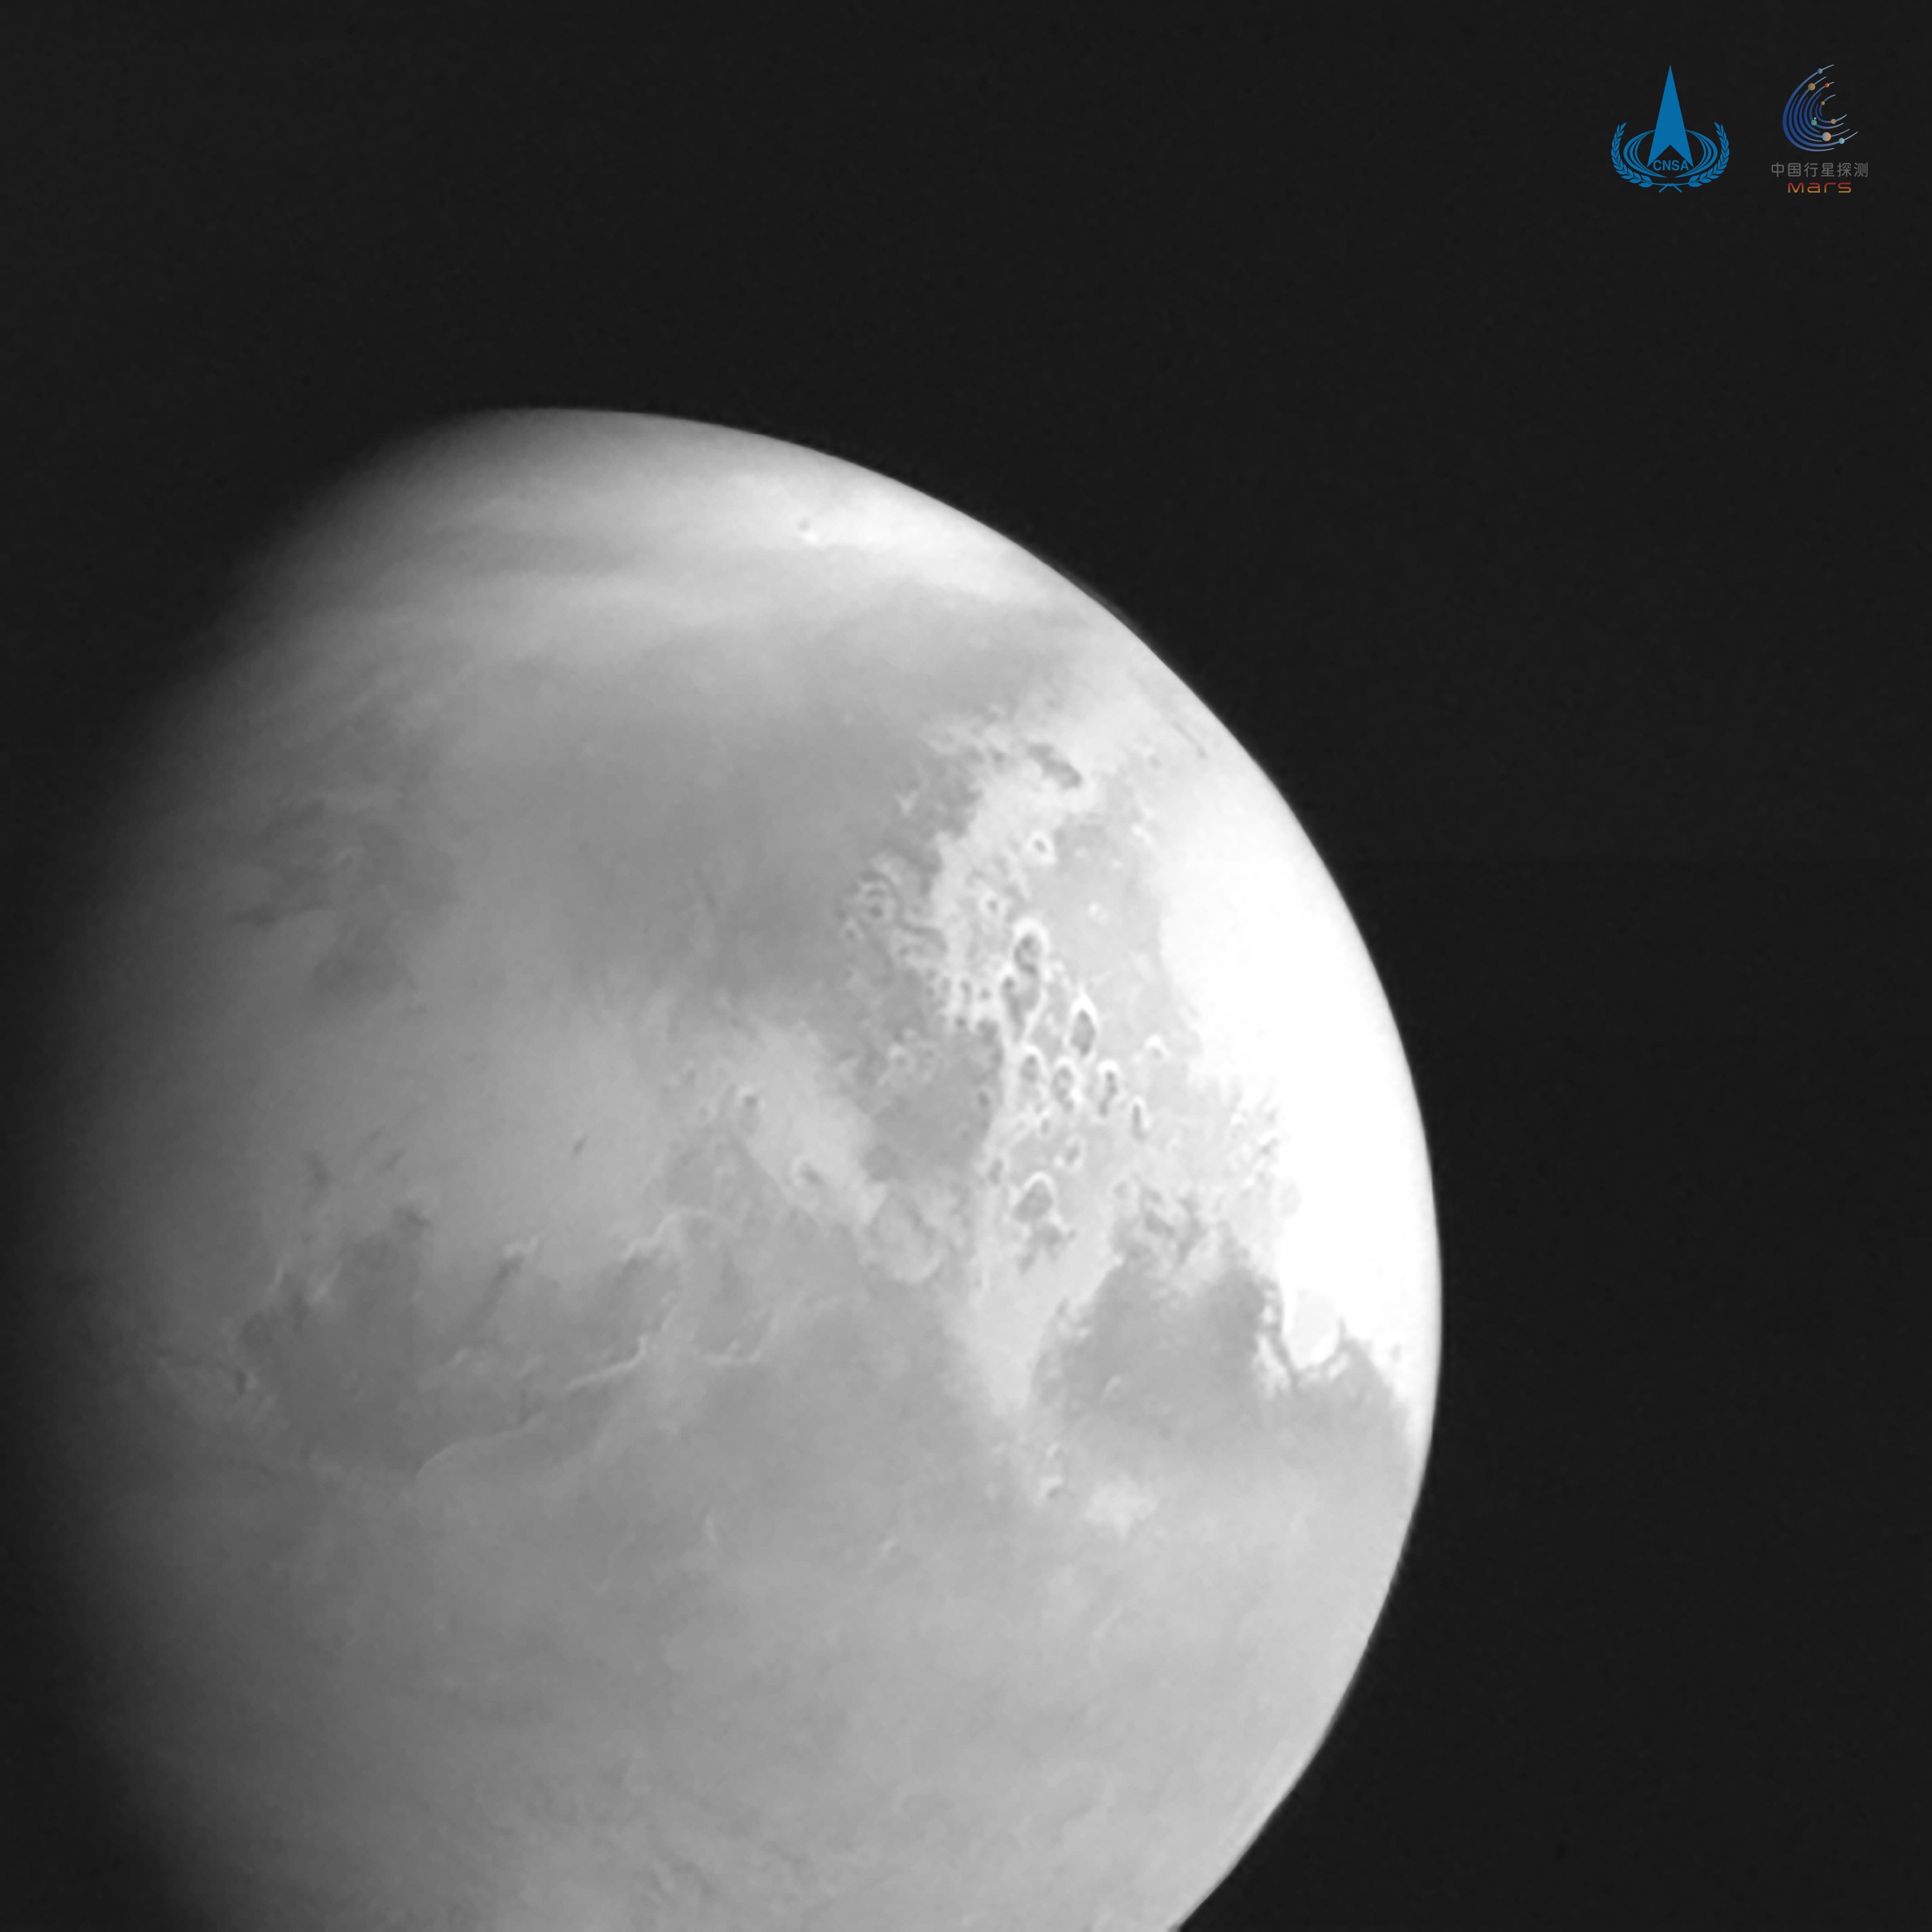 Mars'a yaklaşan Çinli uzay aracından ilk fotoğraf geldi